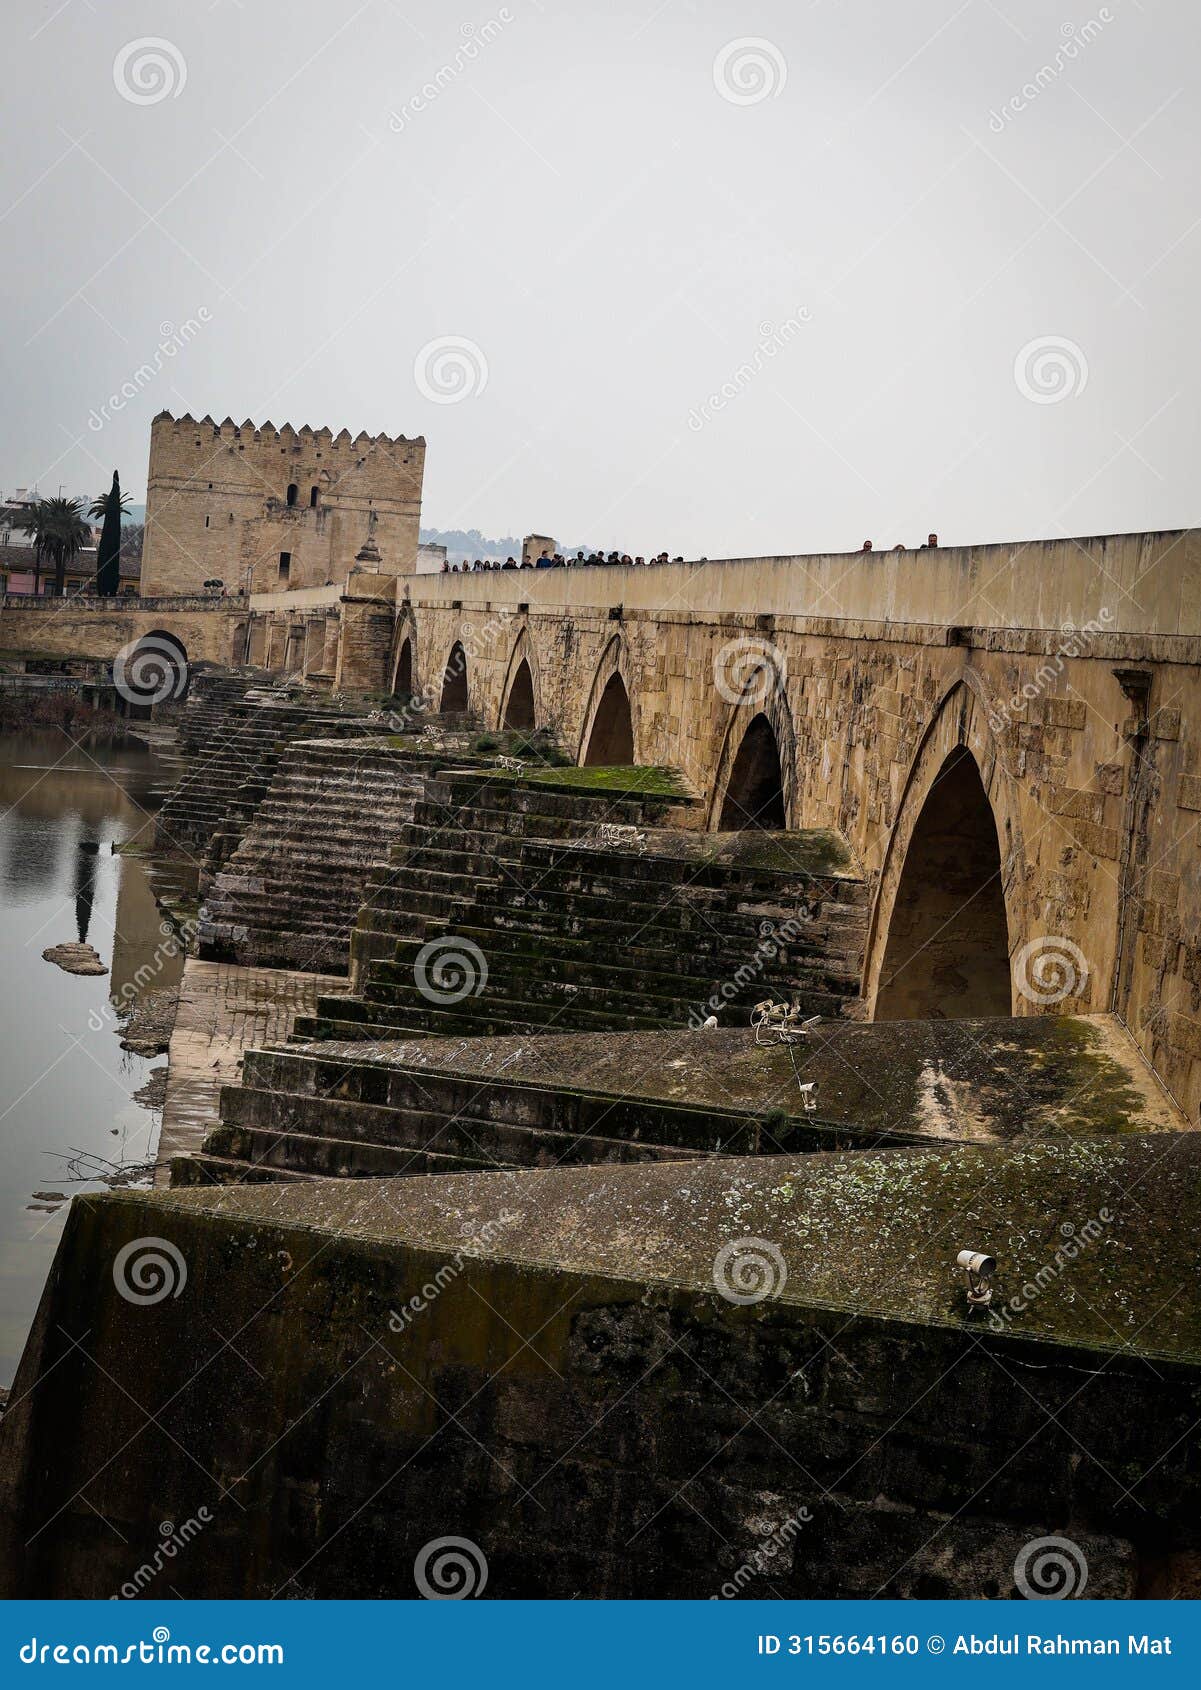 an old roman bridge over guadalquivir river